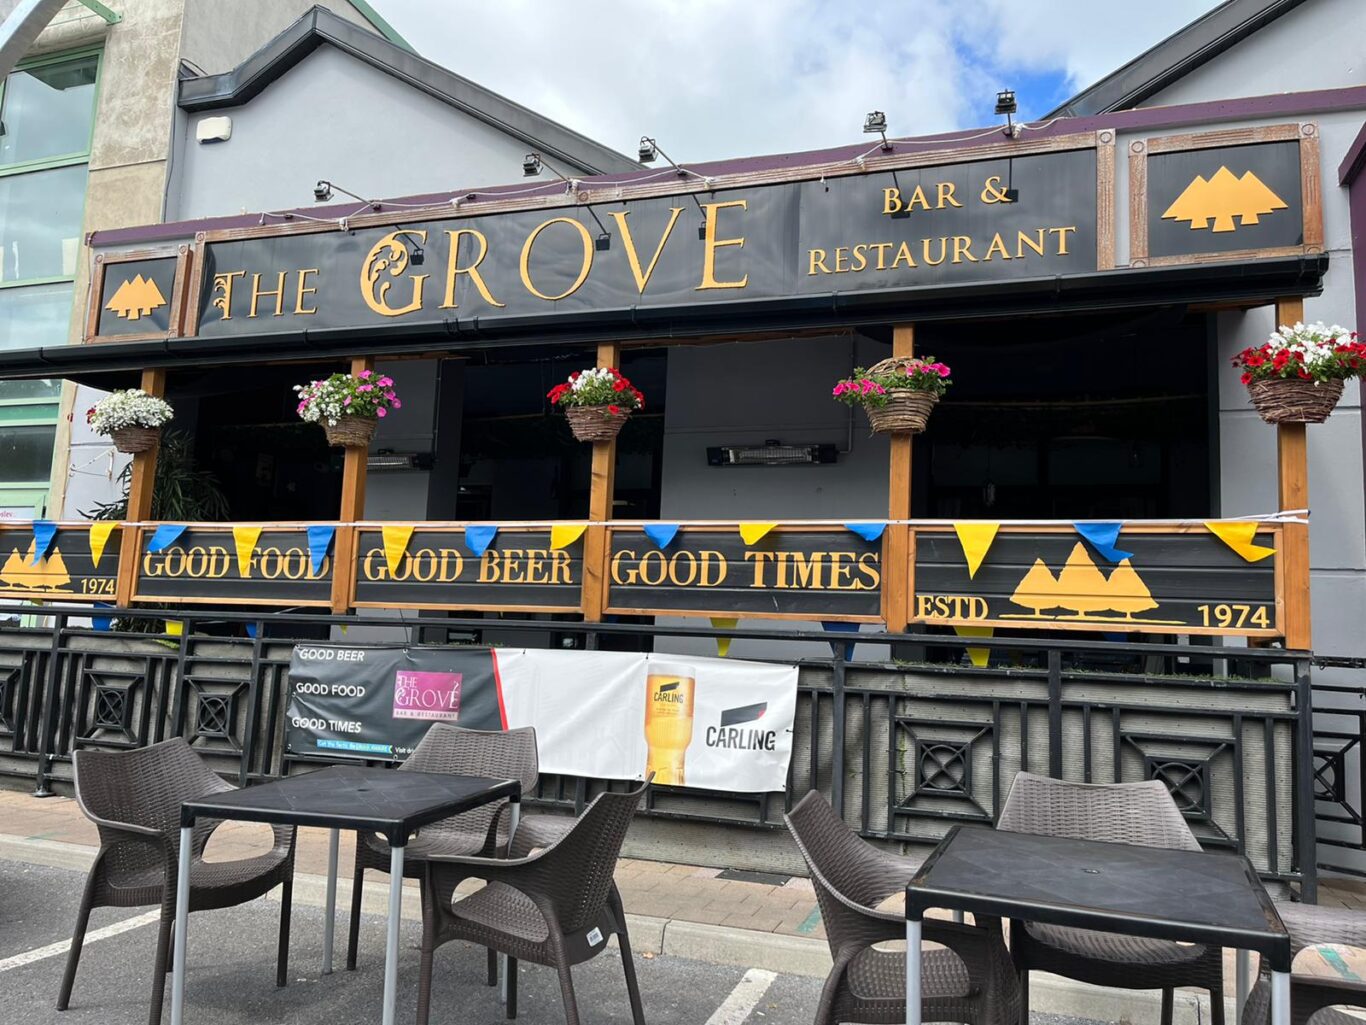 The Grove Bar & Restaurant